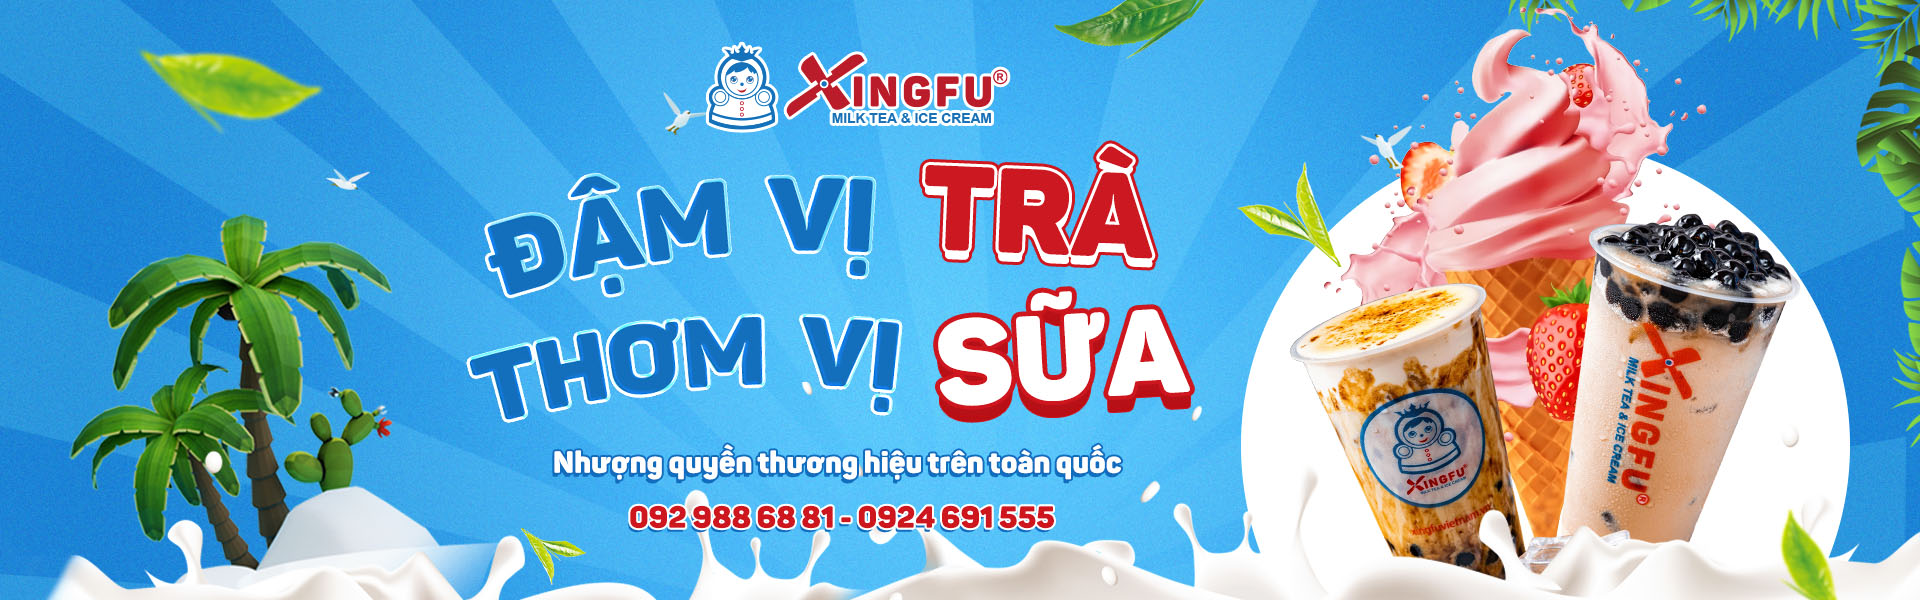 Thương hiệu nhượng quyền Xingfu Việt Nam - Đậm vị trà, thơm vị sữa